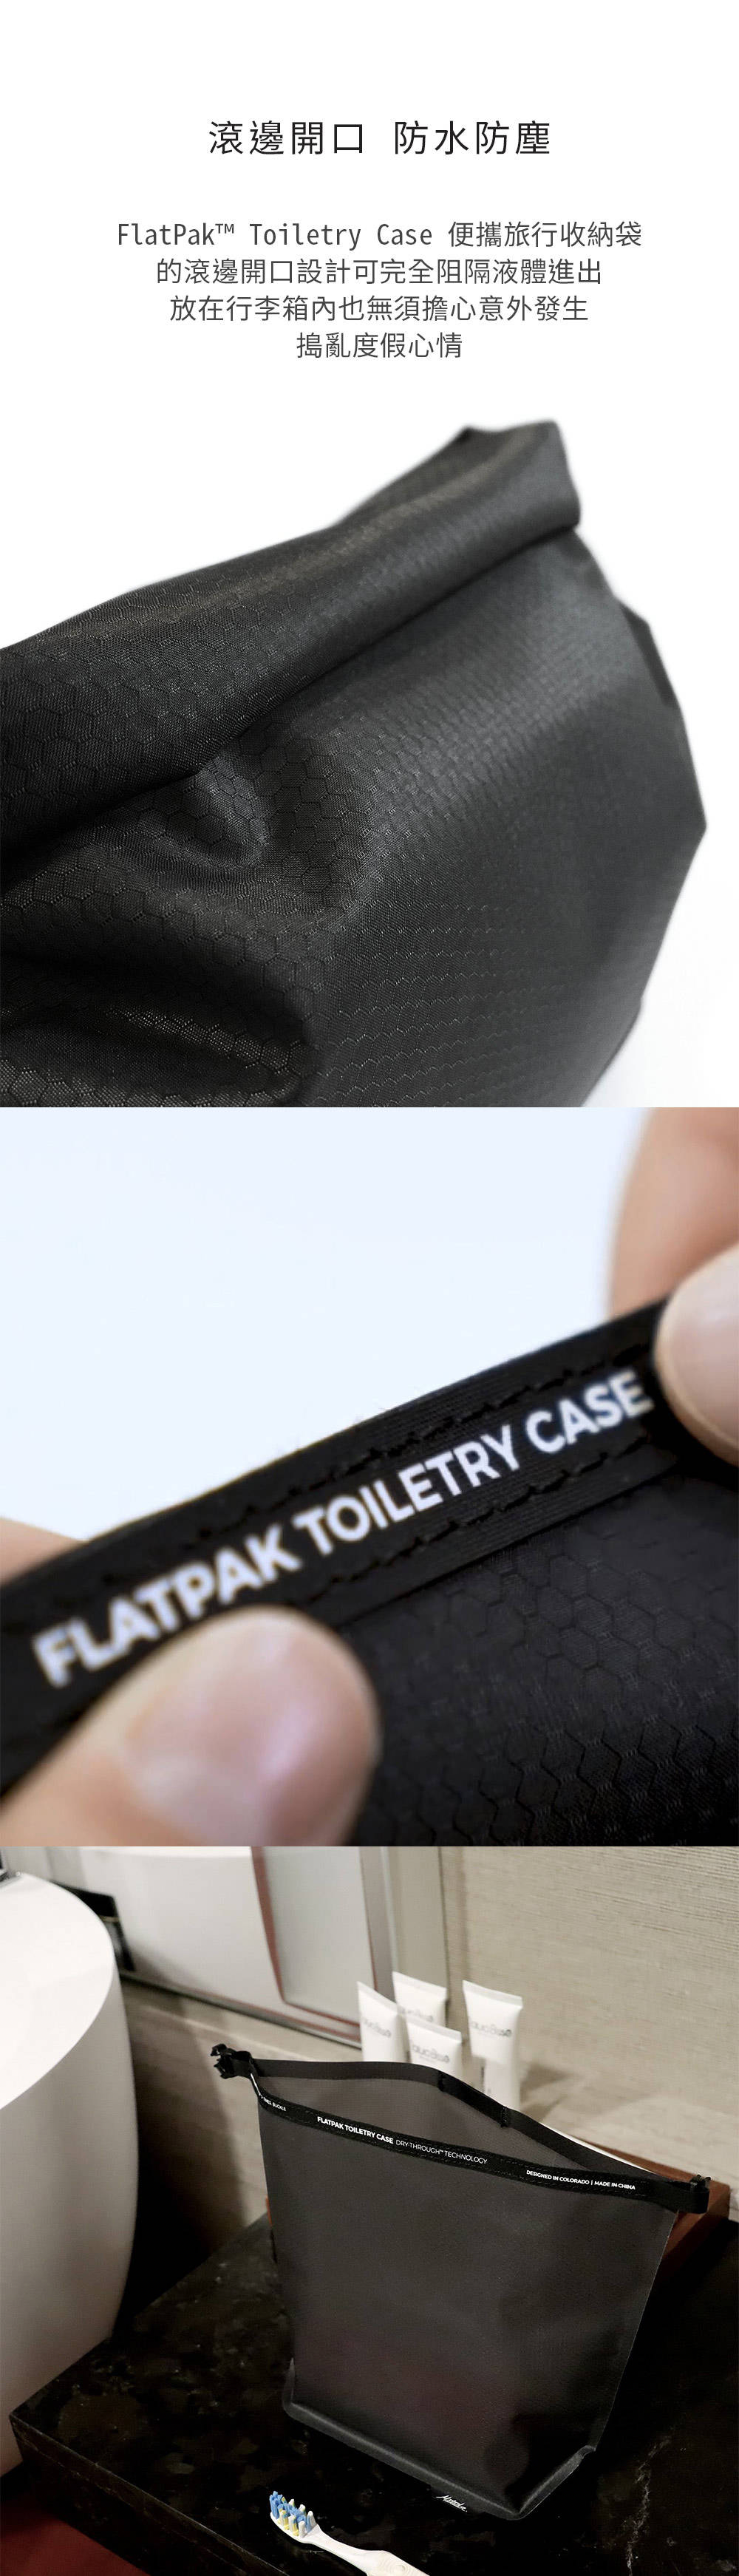 美國 Matador 鬥牛士 FlatPak Toiletry Case 便攜旅行收納袋